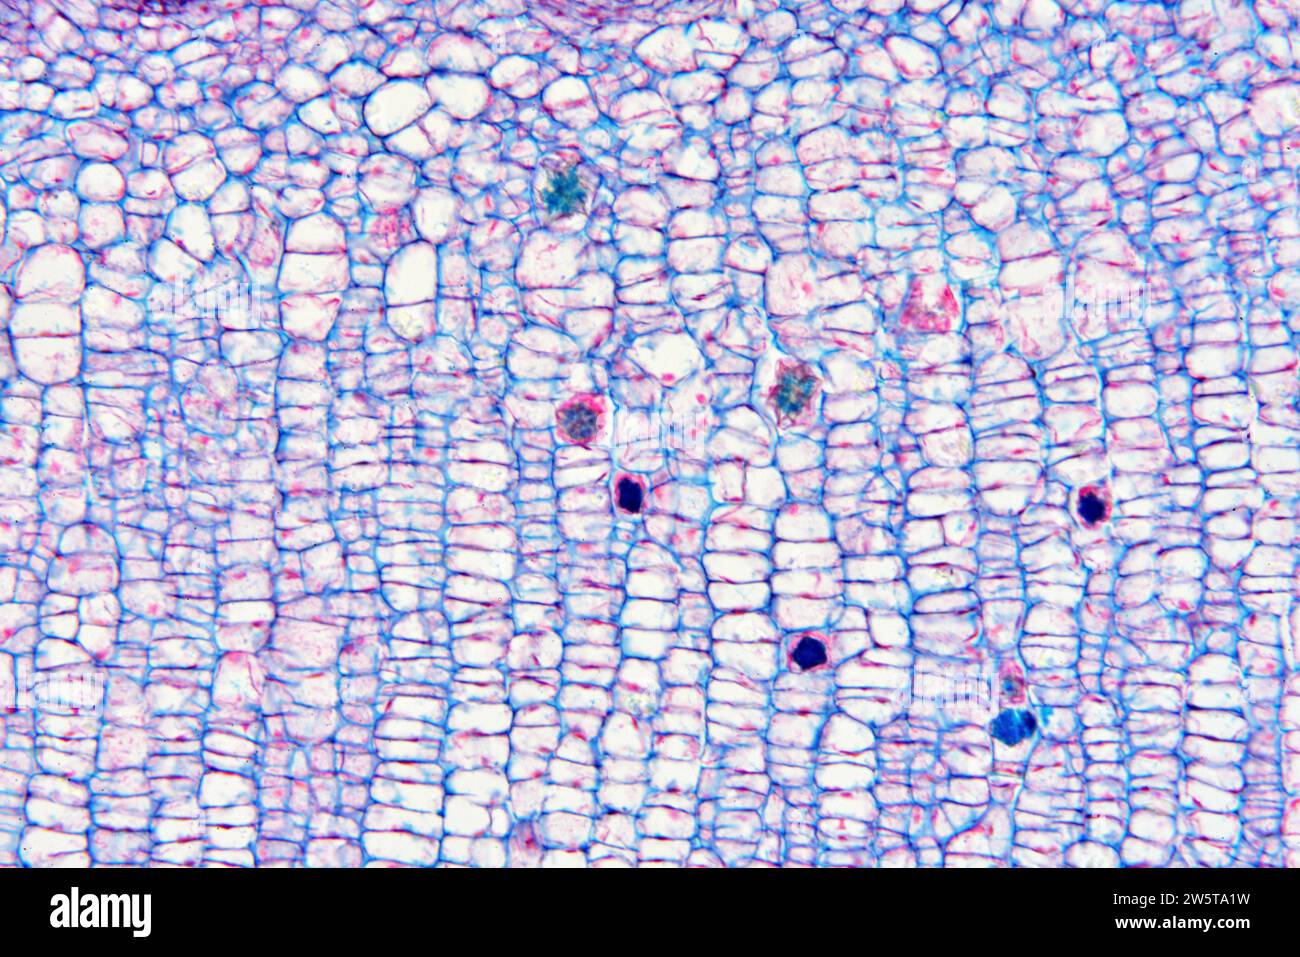 Raphide von Calciumoxalat in einer Pflanze Zelleln. Photomikrograph X100 mit einer Breite von 10 cm. Stockfoto